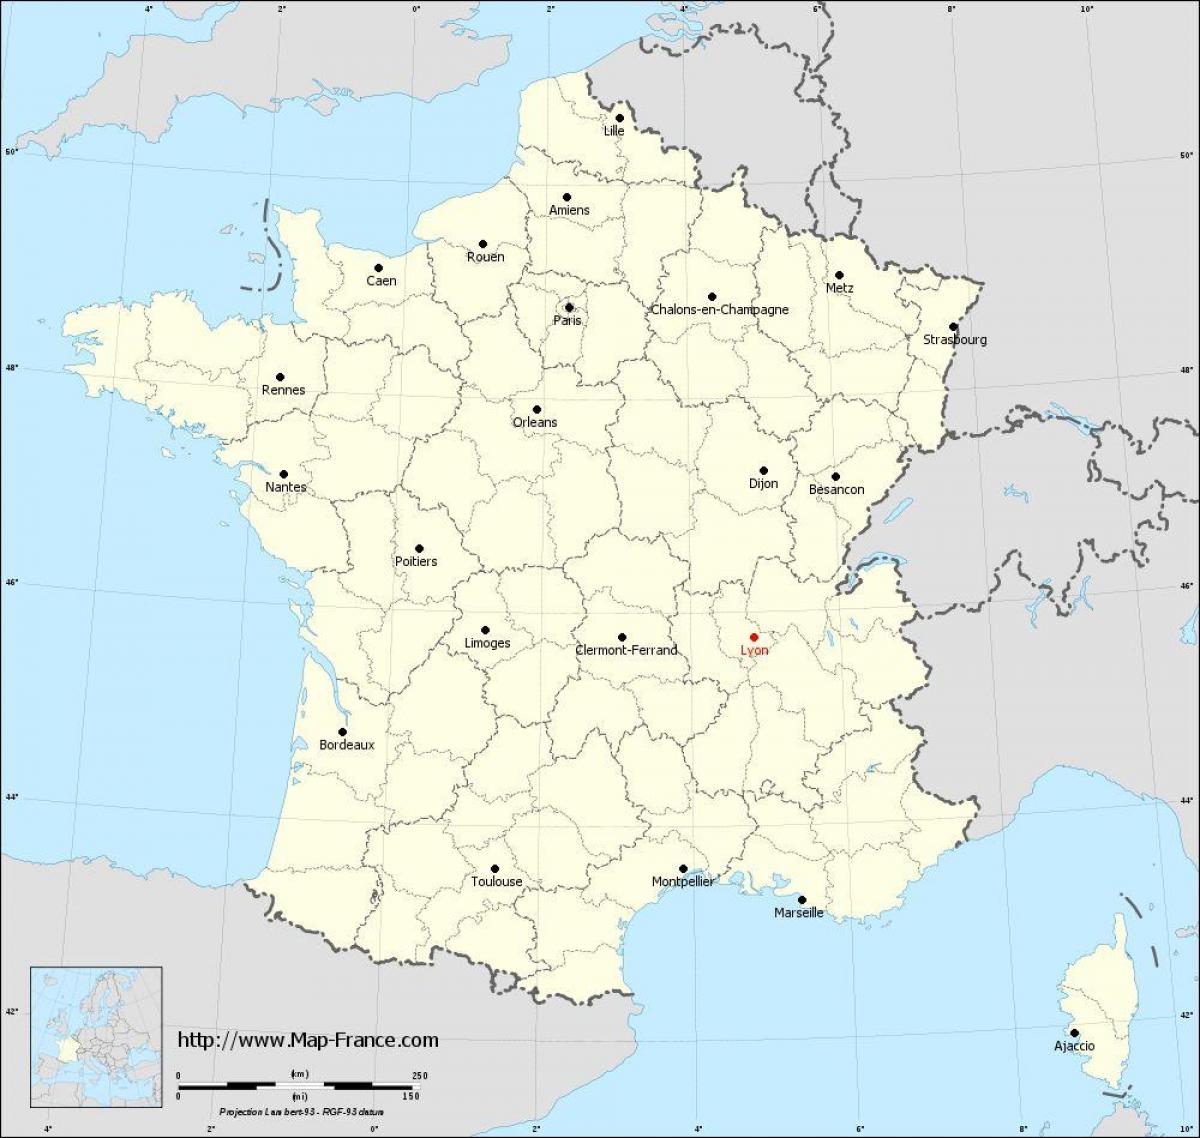 อยู่ที่ไหน Lyons องฝรั่งเศสอยู่ในแผนที่